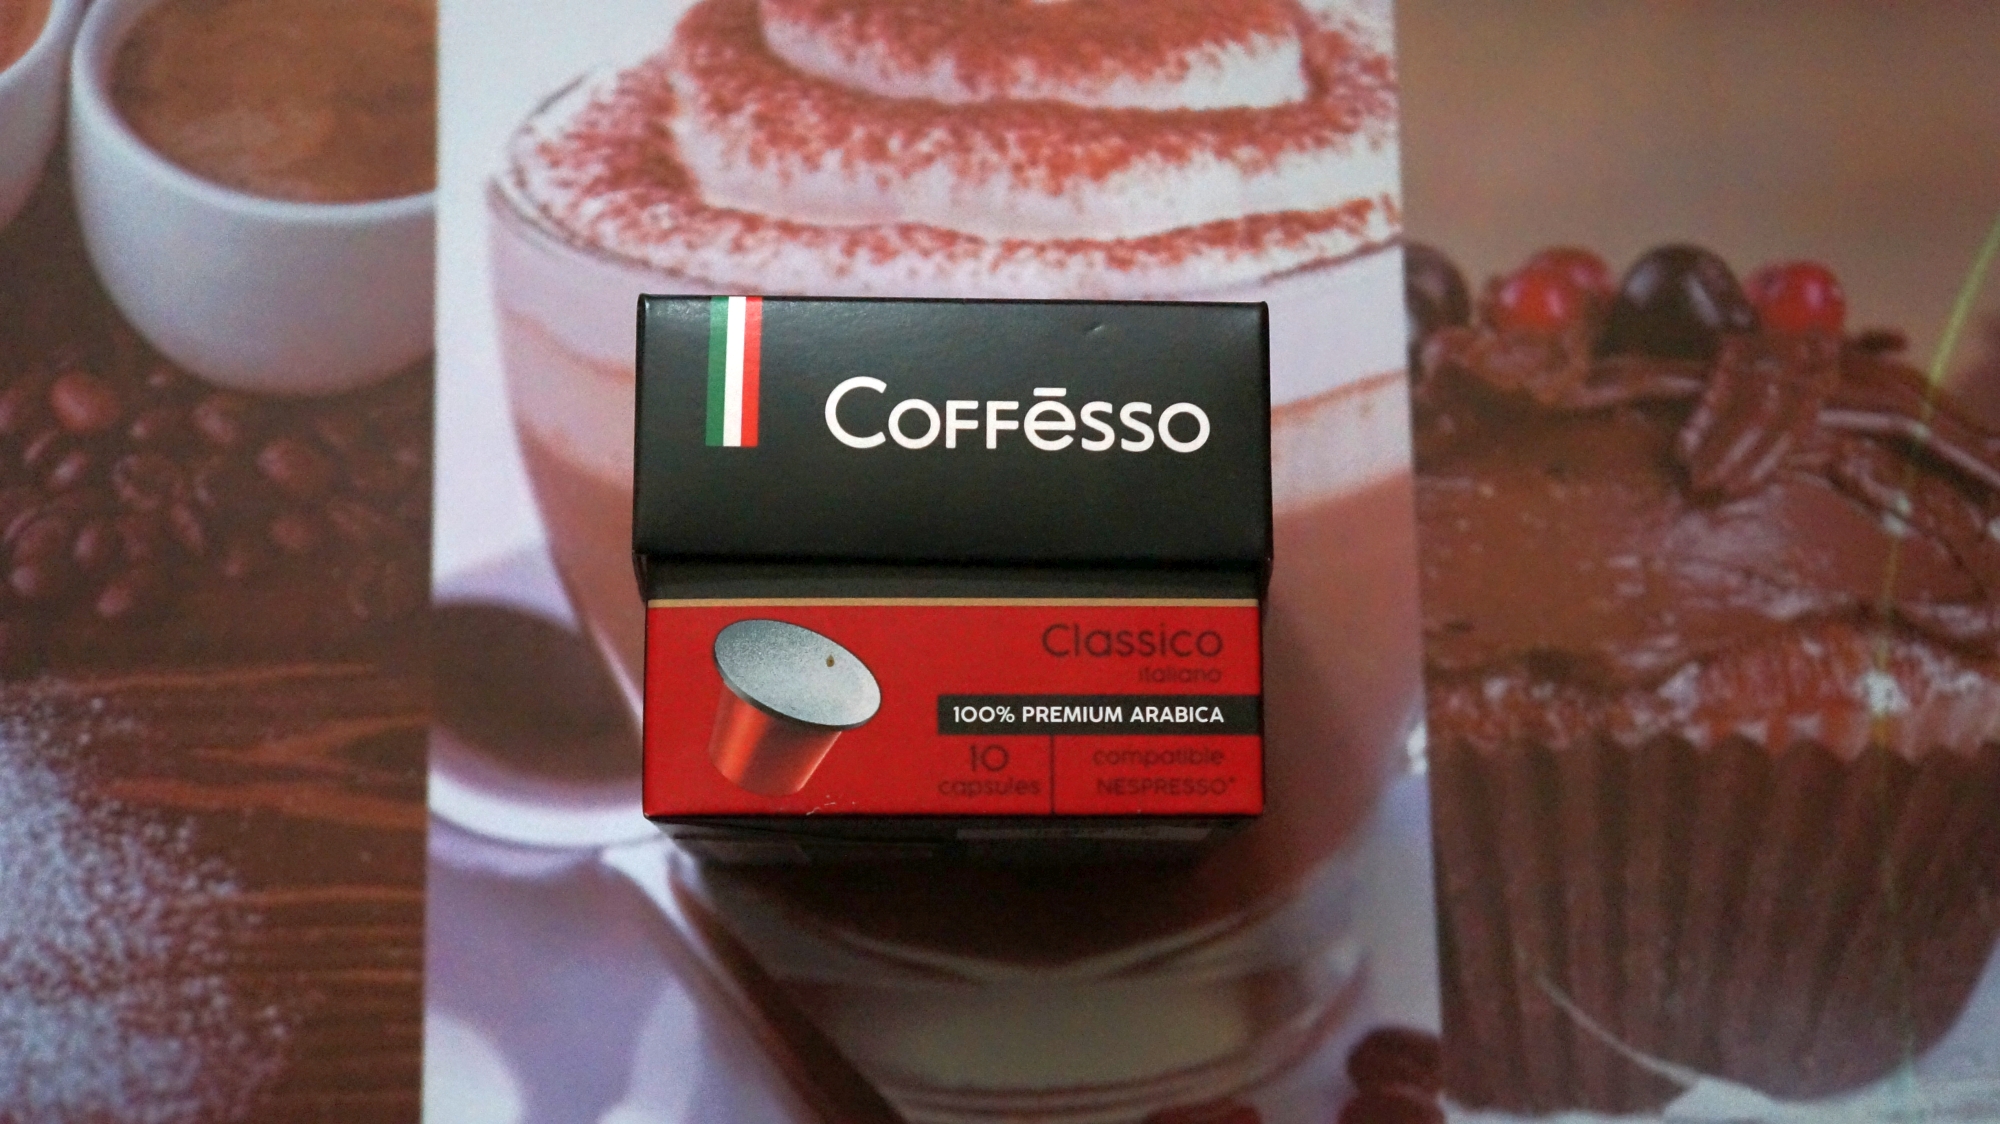 Кофе в капсулах Coffesso Classico Italiano стандарта Nespresso